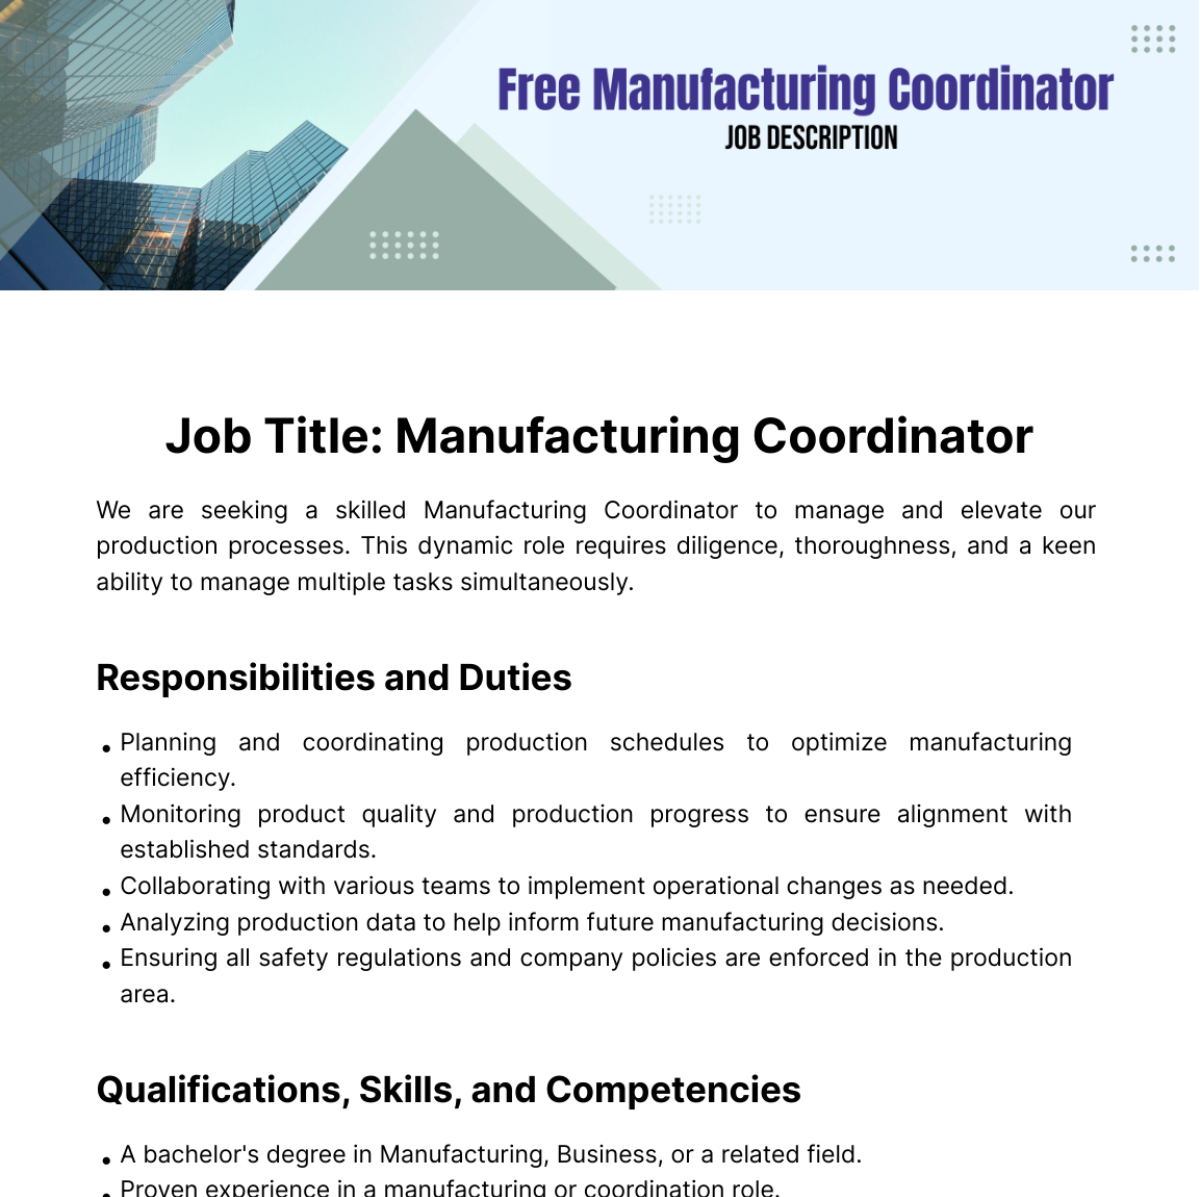 Free Manufacturing Coordinator Job Description Template